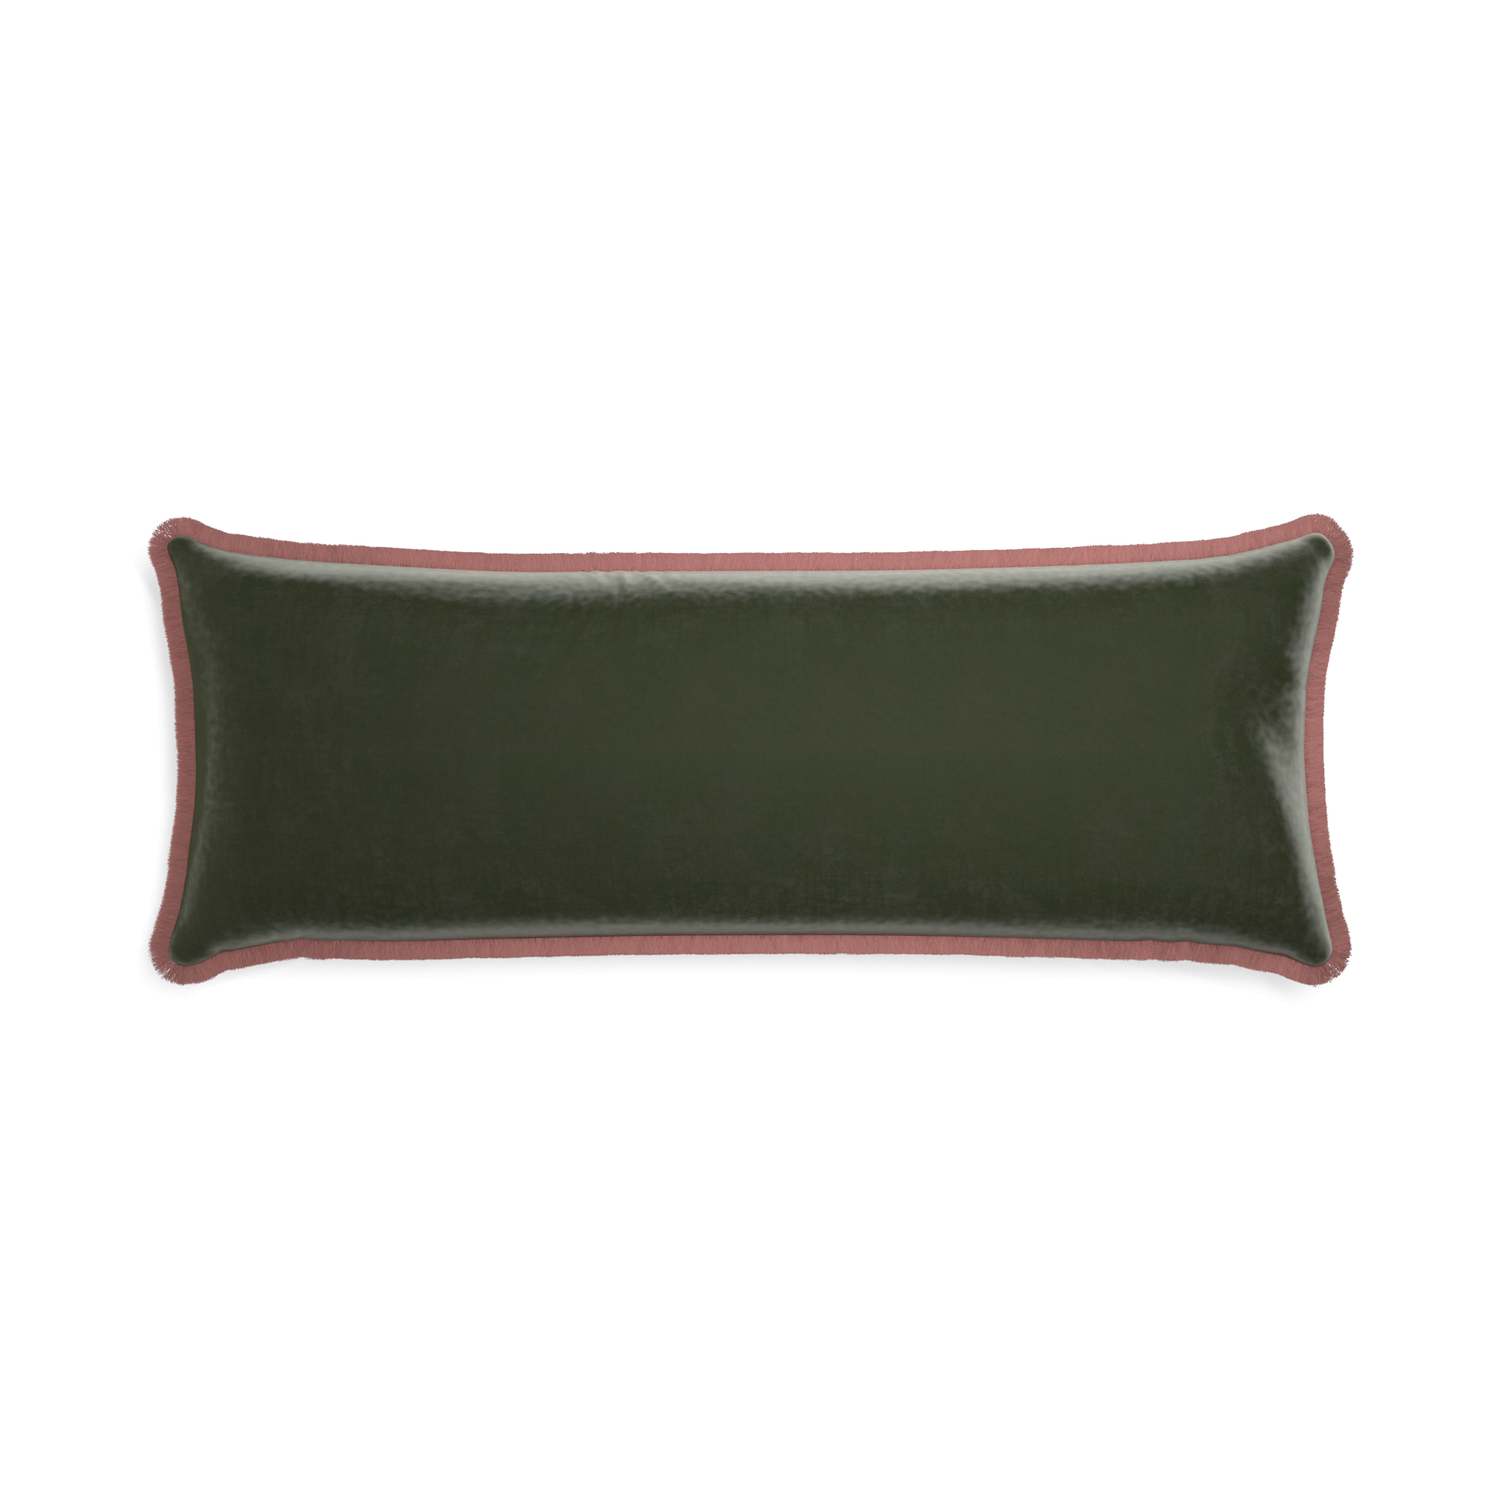 Xl-lumbar fern velvet custom pillow with d fringe on white background